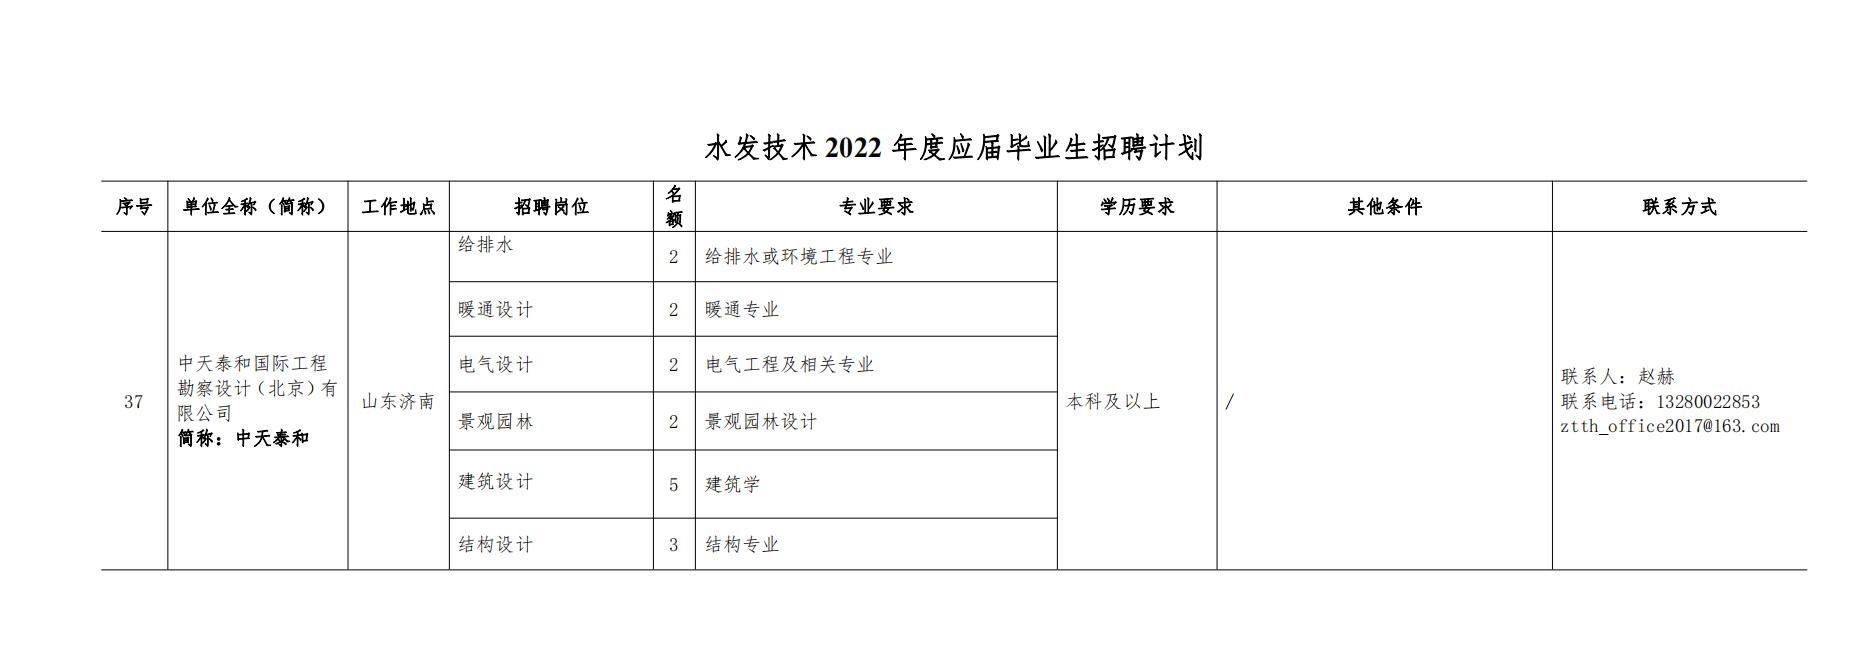 888集团电子游戏技術2022年度校園招聘公告 - 副本_00.jpg